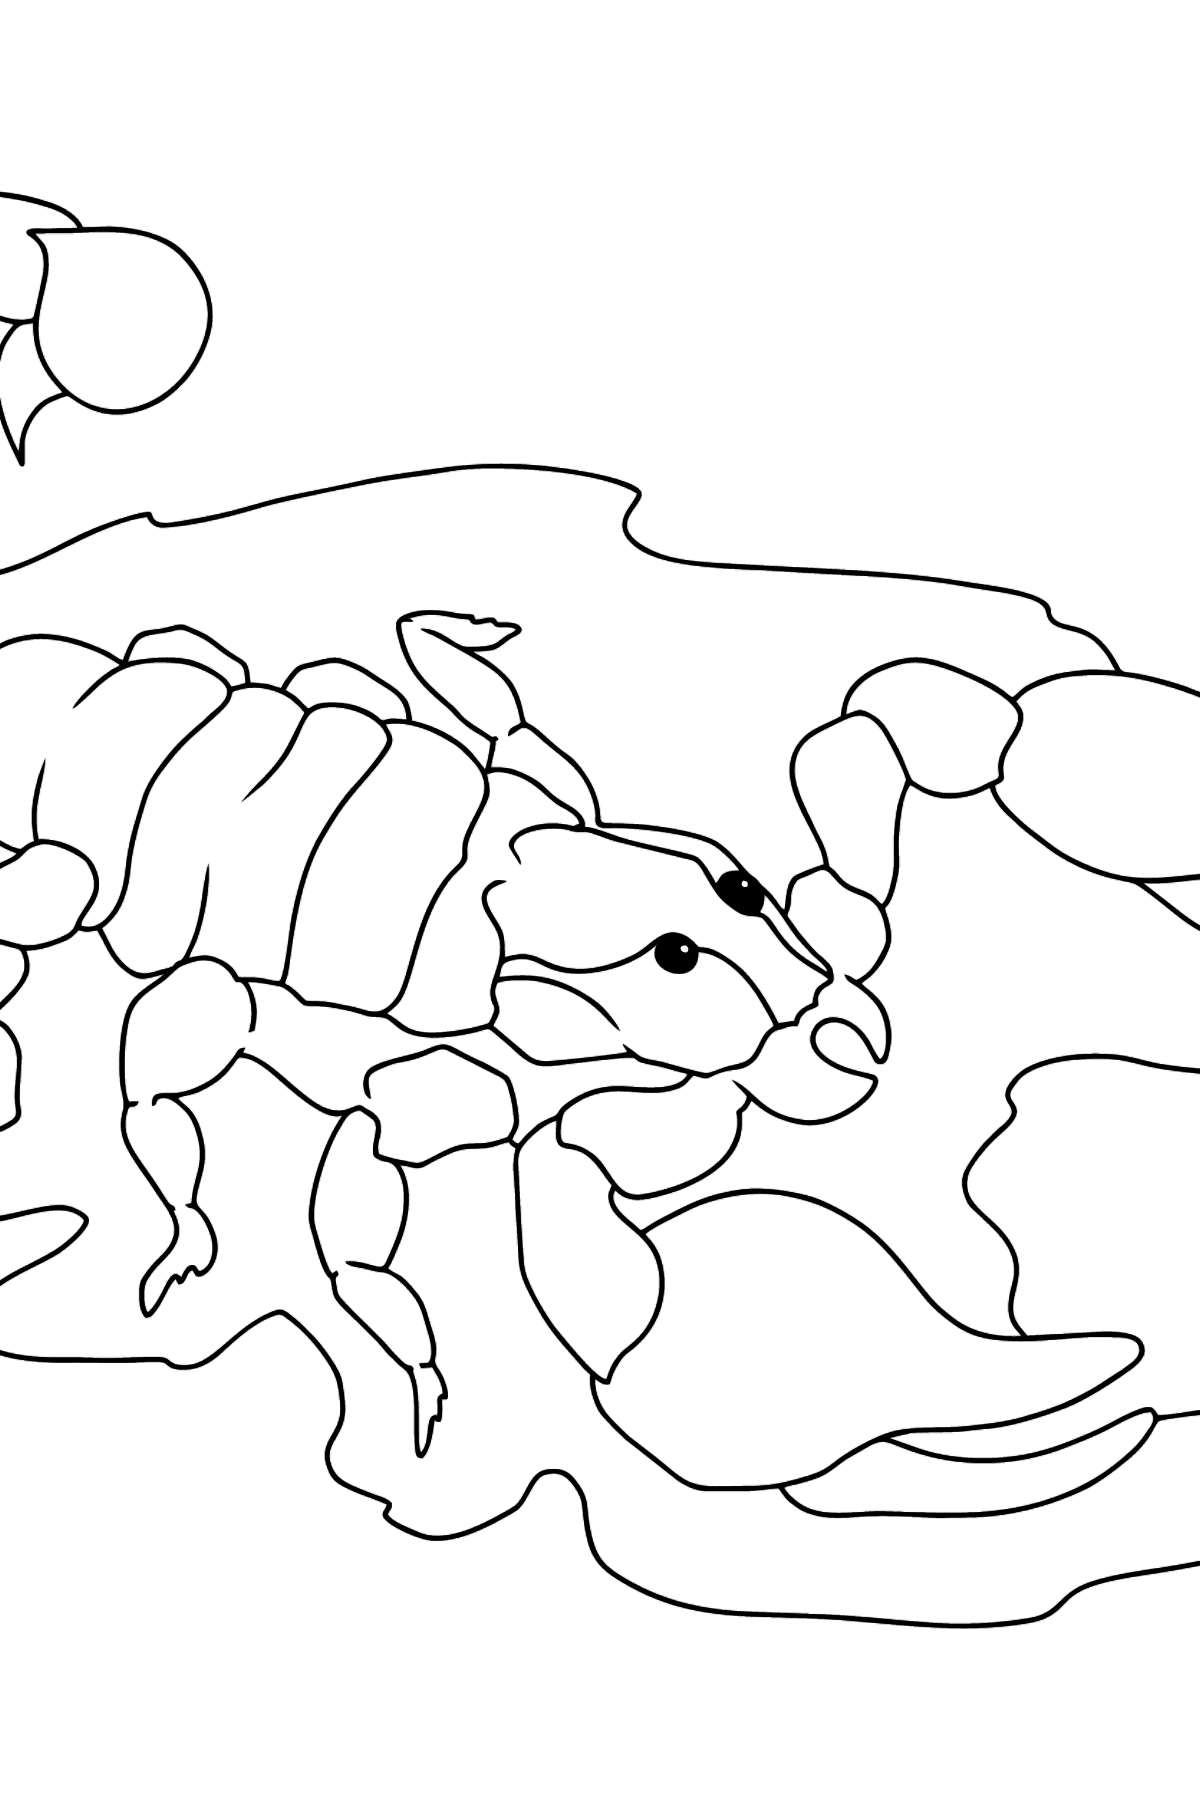 Tegning til fargelegging svart skorpion - Tegninger til fargelegging for barn